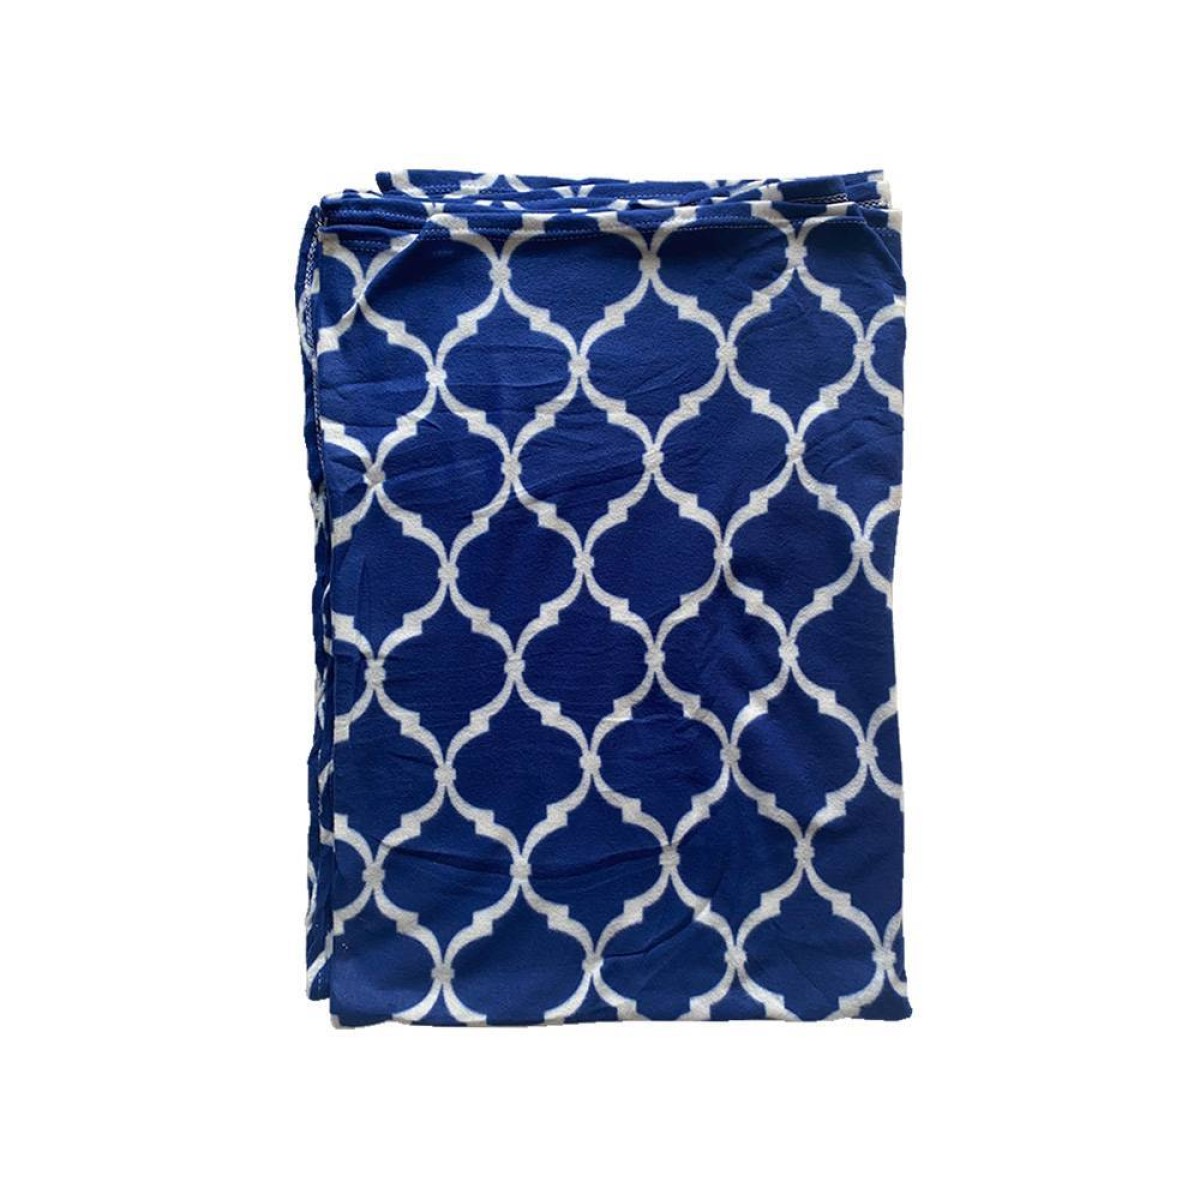 Κουβέρτα - Ριχτάρι Fleece 130x170cm μπλε χρώμα με λευκά σχέδια TNS 39-950-2072-3